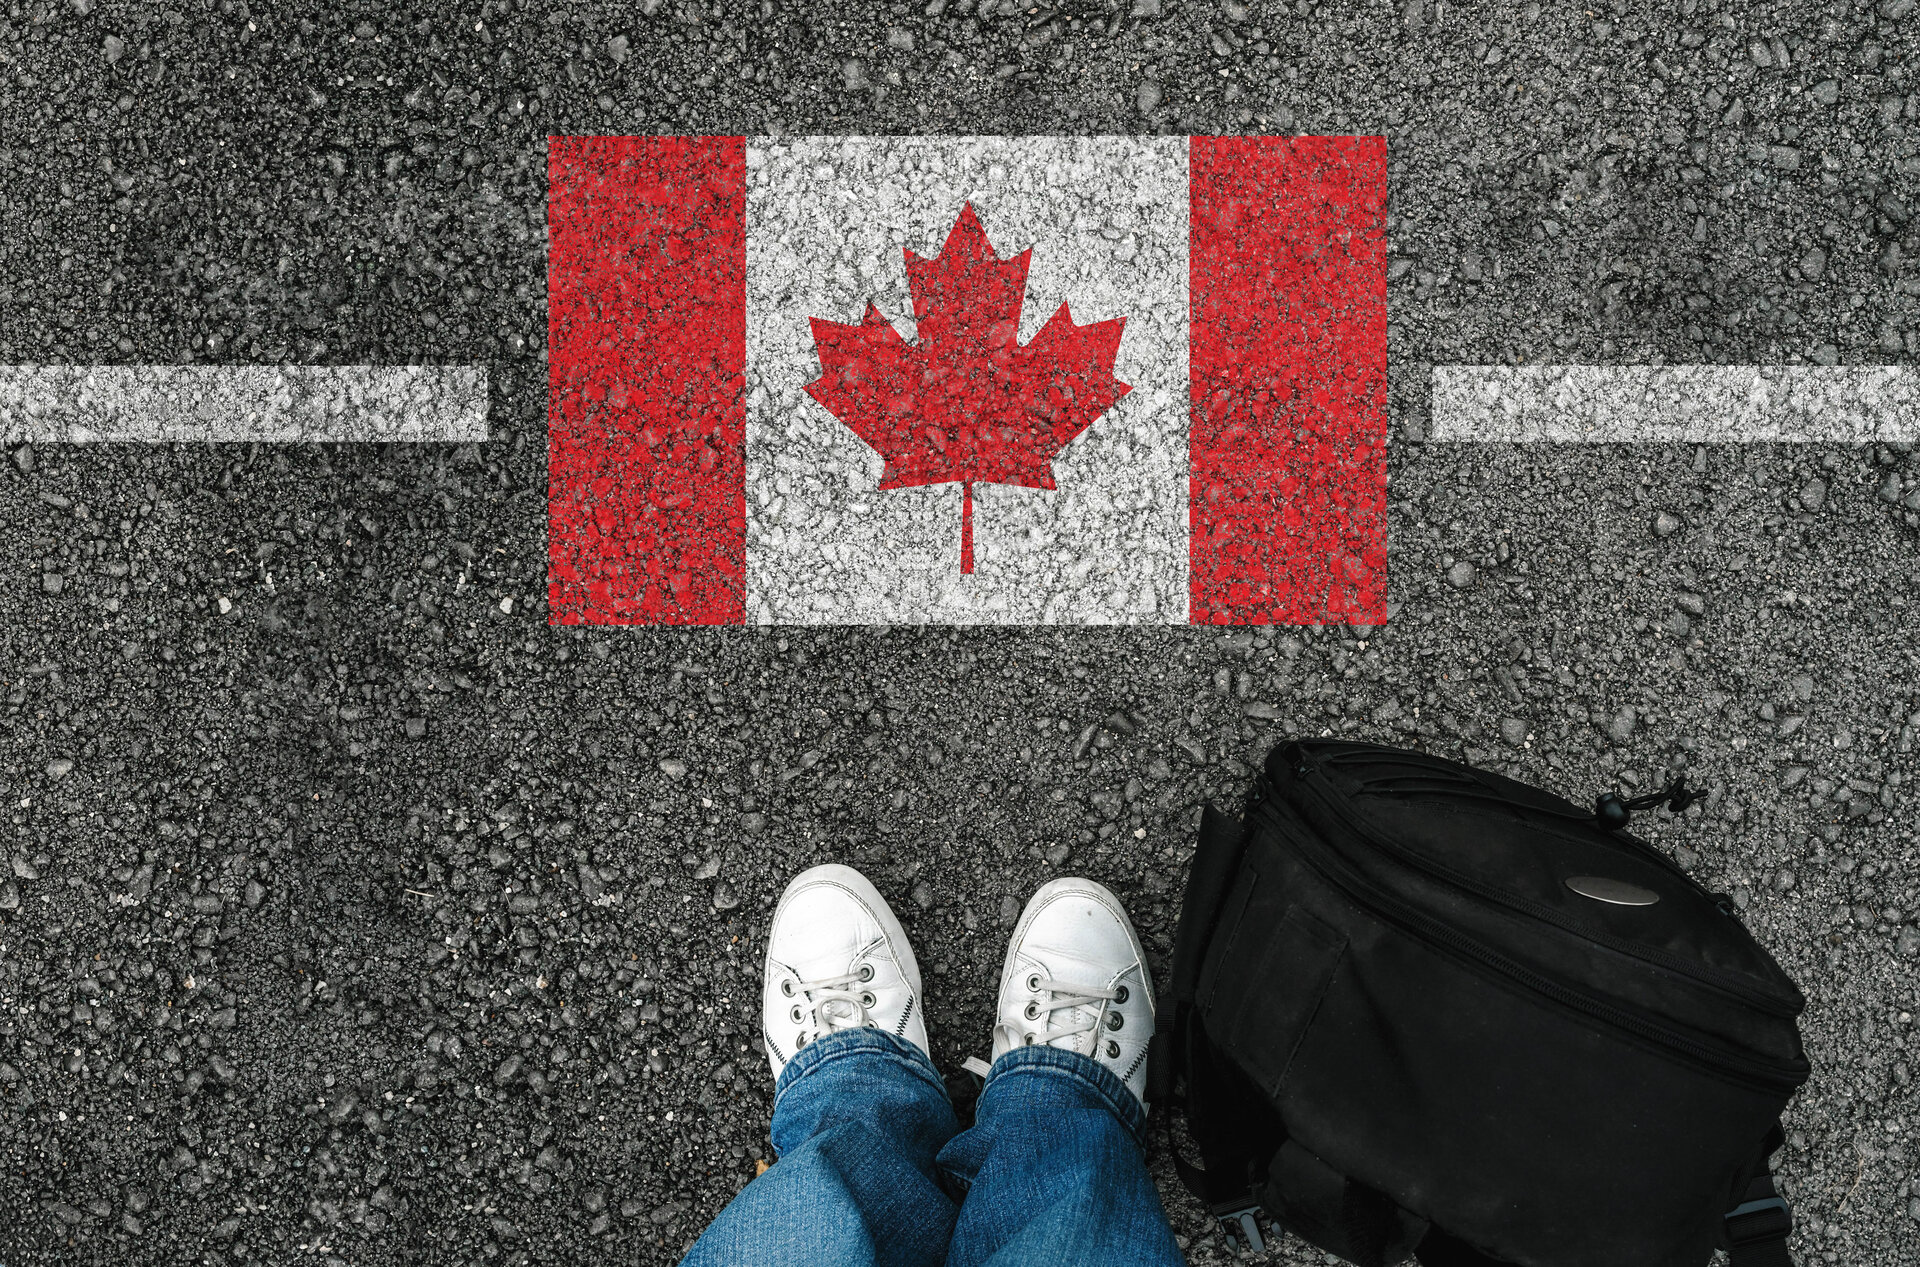 weiße Grenzlinie mit Kanadische Flagge auf einer Straße, davor eine schwarze Tasche und Beinpaar in Jeans und weißen Turnschuhen.